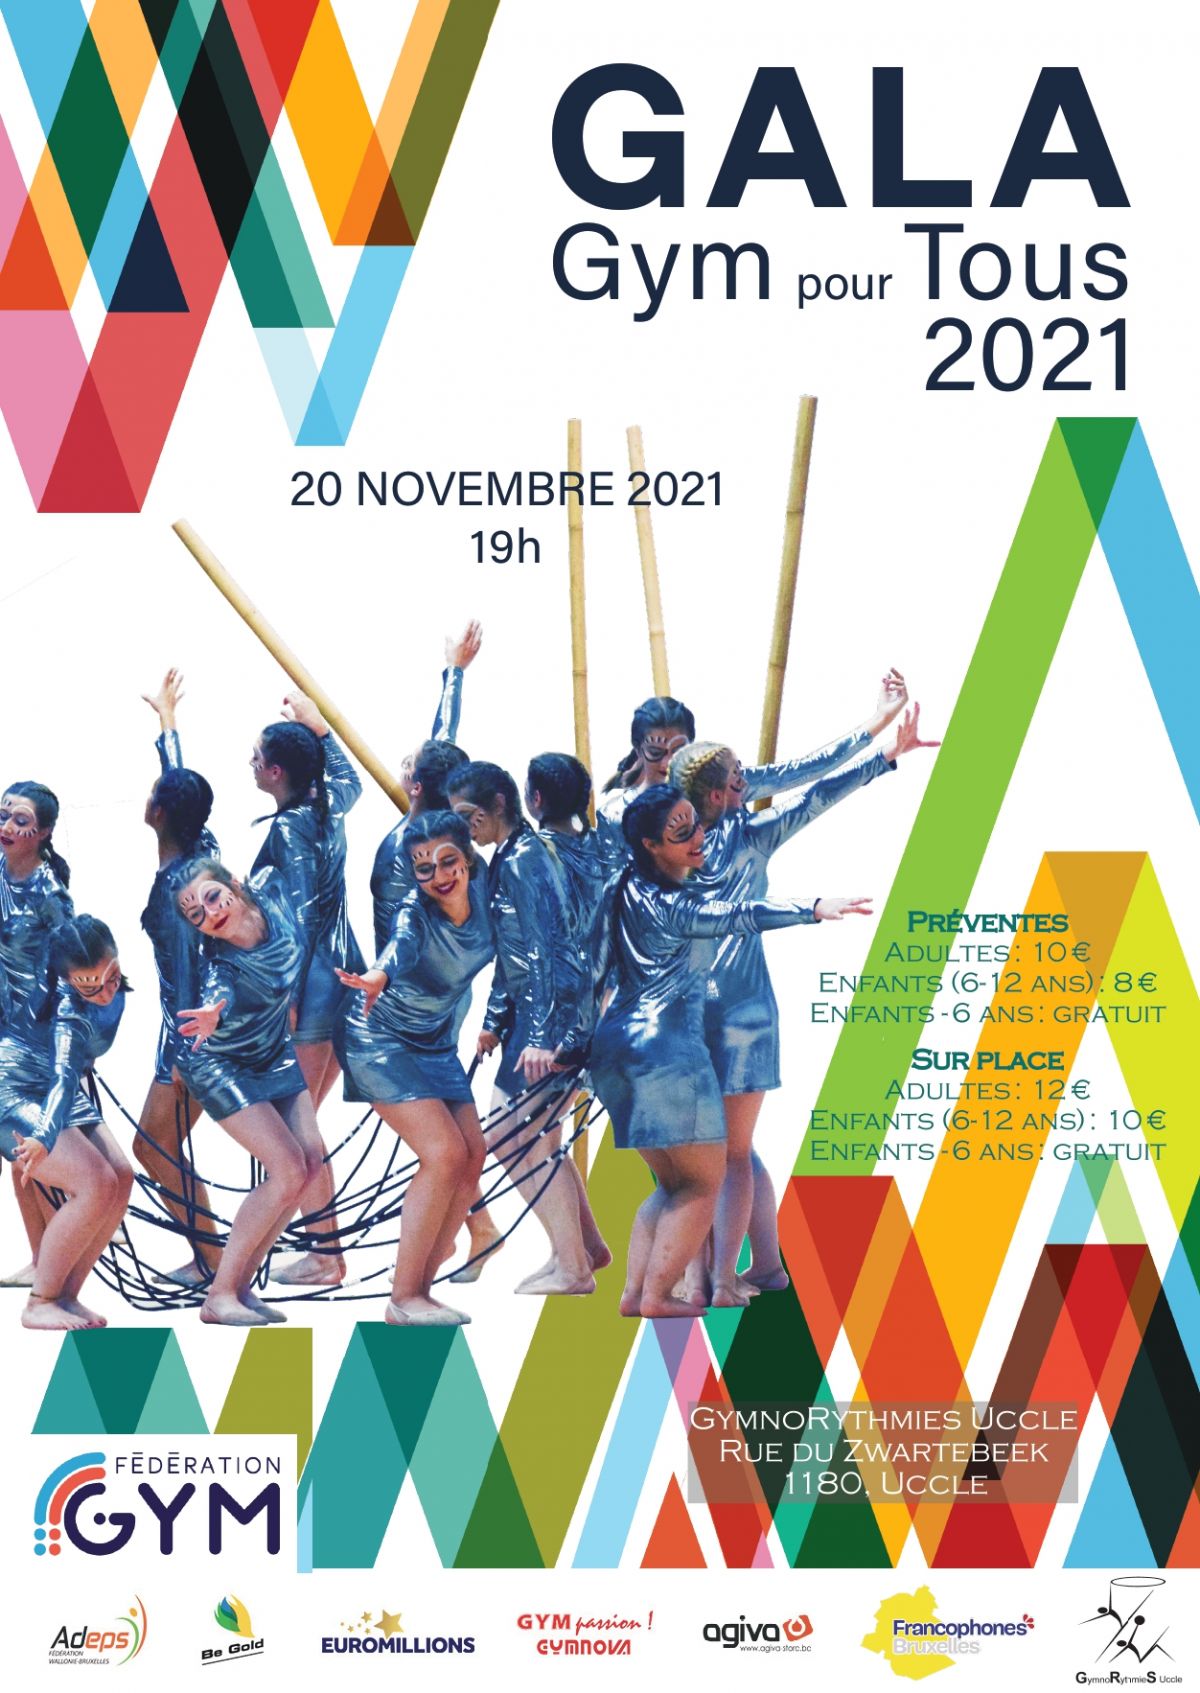 Participez au Gala Gym pour Tous 2021